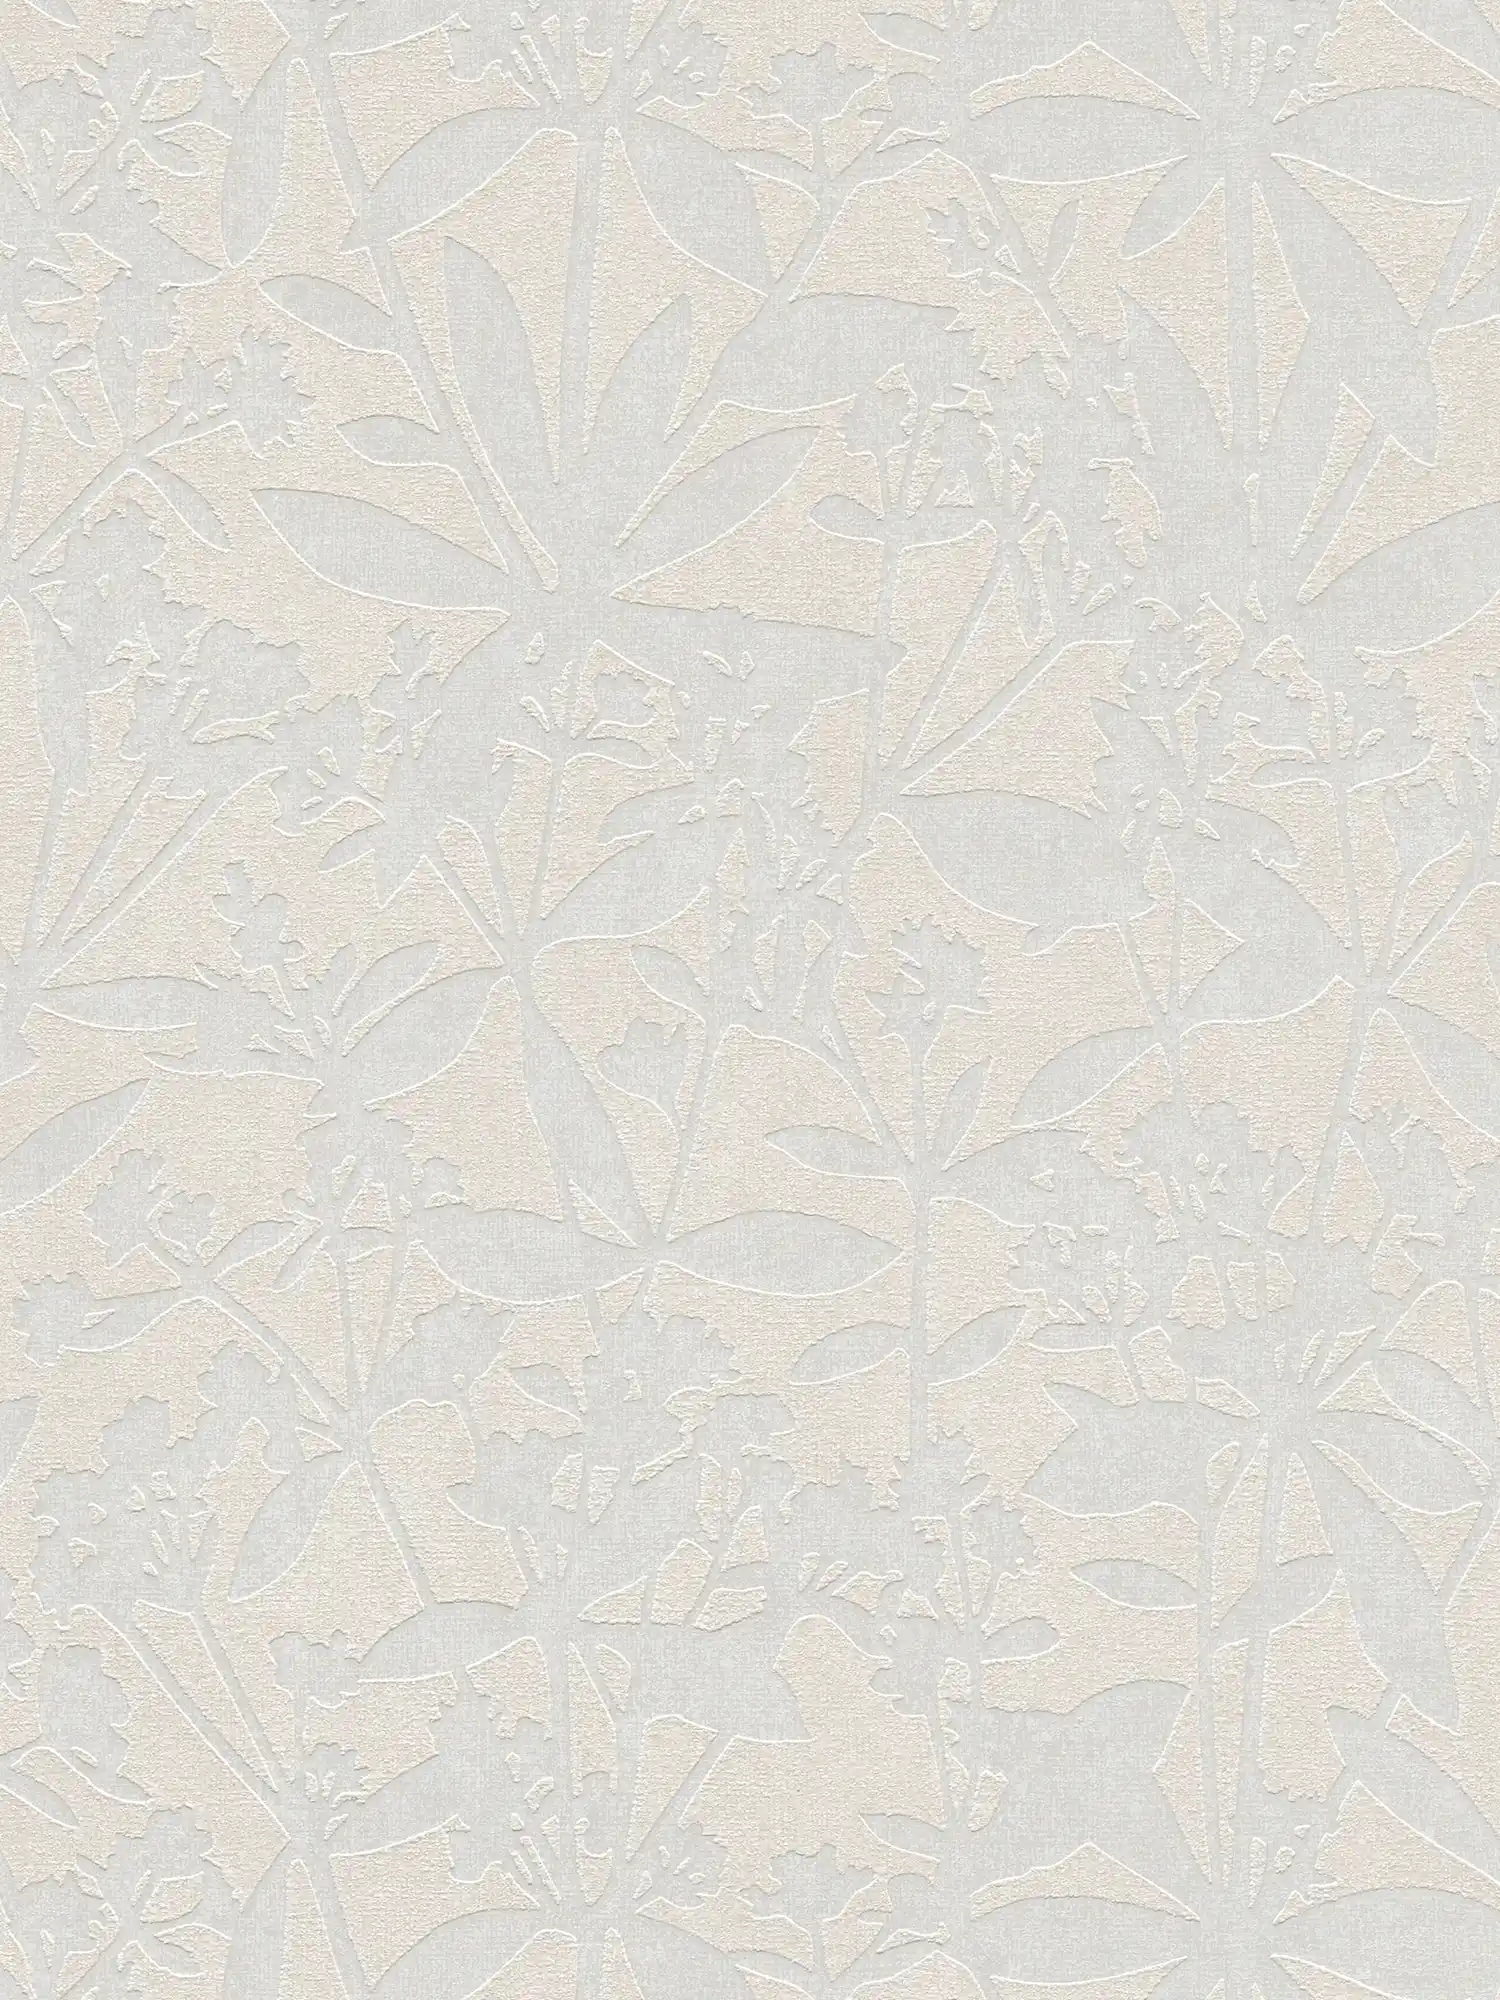 Bloemrijkvliesbehang met bloemenstructuur - crème, wit
